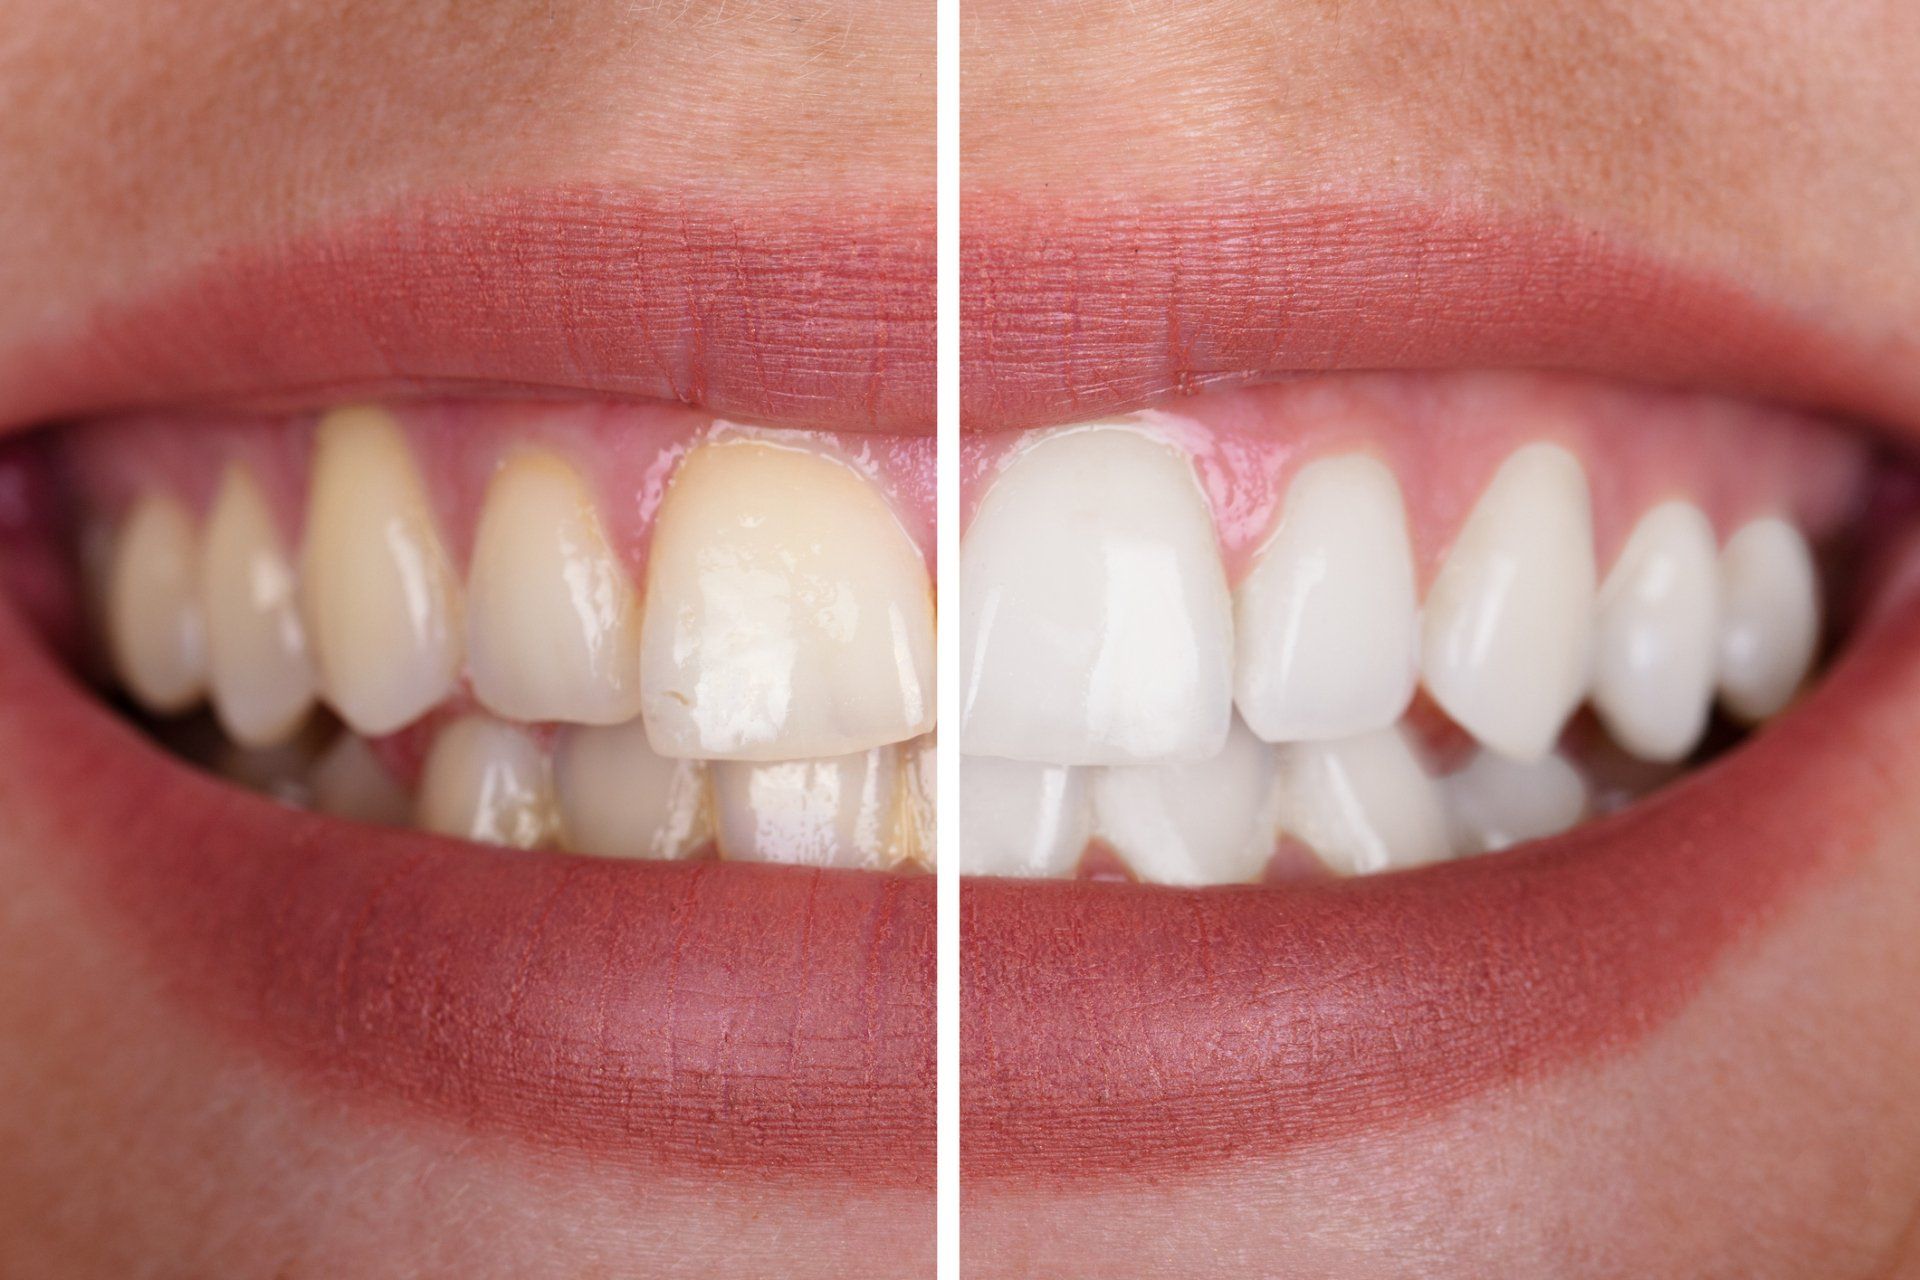 Teeth whitening done in a cosmetic dentist office in Casper, WY